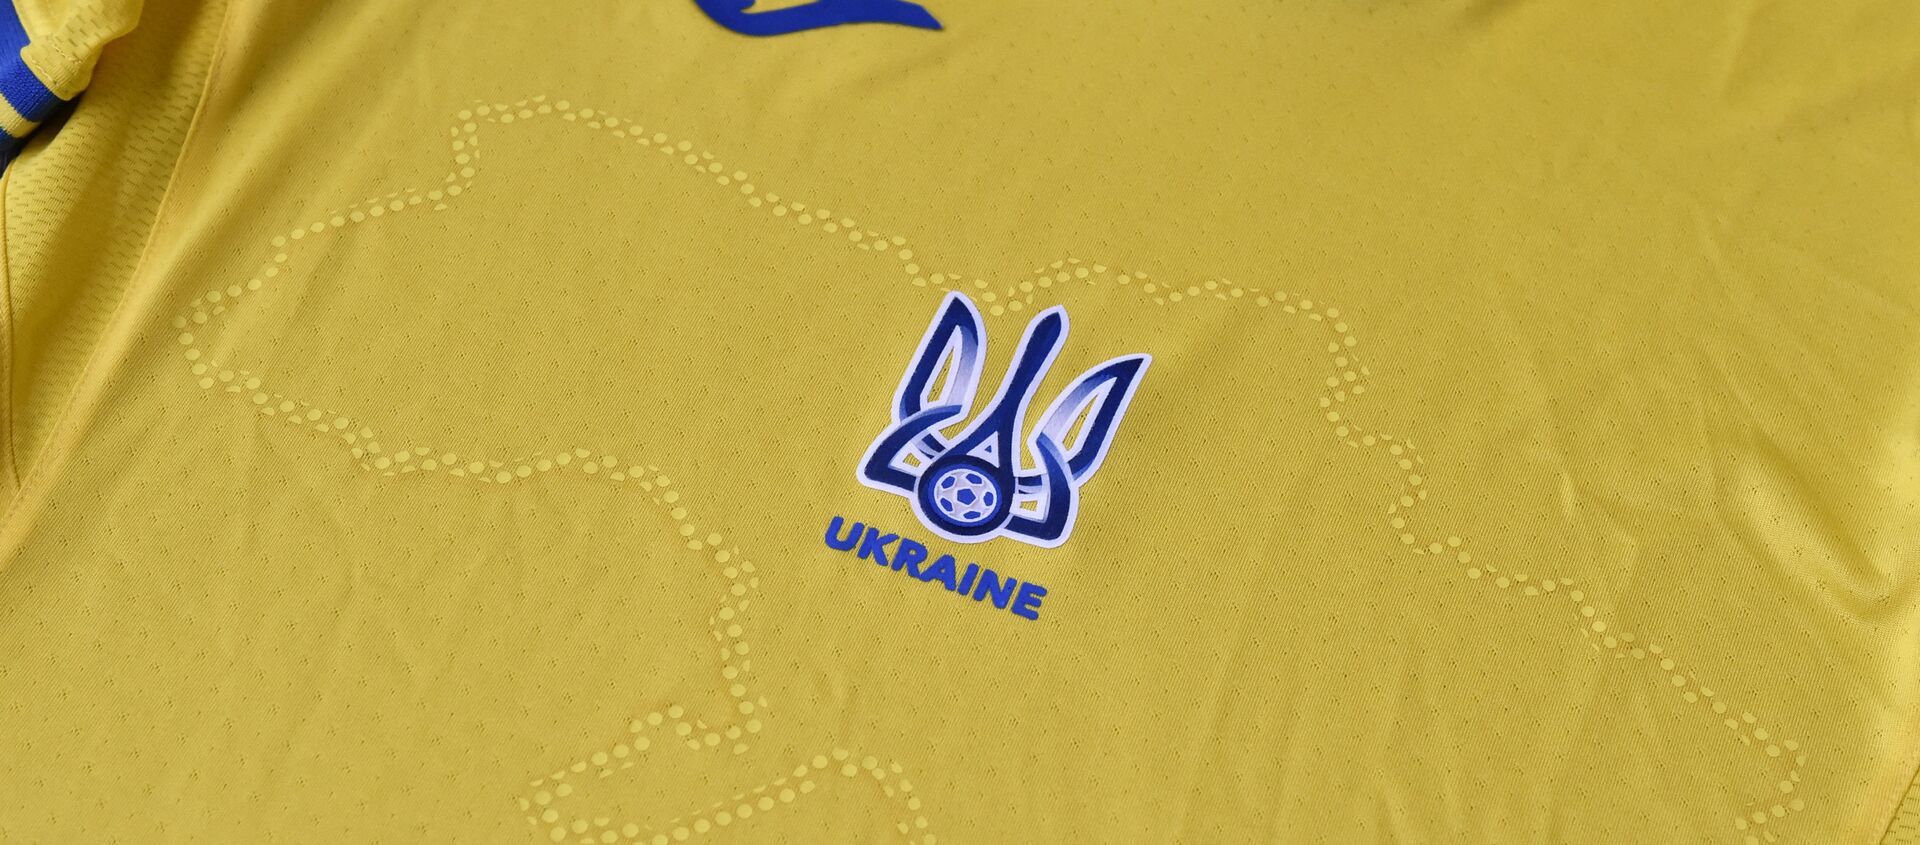 Đồng phục thi đấu của đội tuyển Ukraina tại Giải vô địch bóng đá châu Âu EURO 2020. - Sputnik Việt Nam, 1920, 07.06.2021